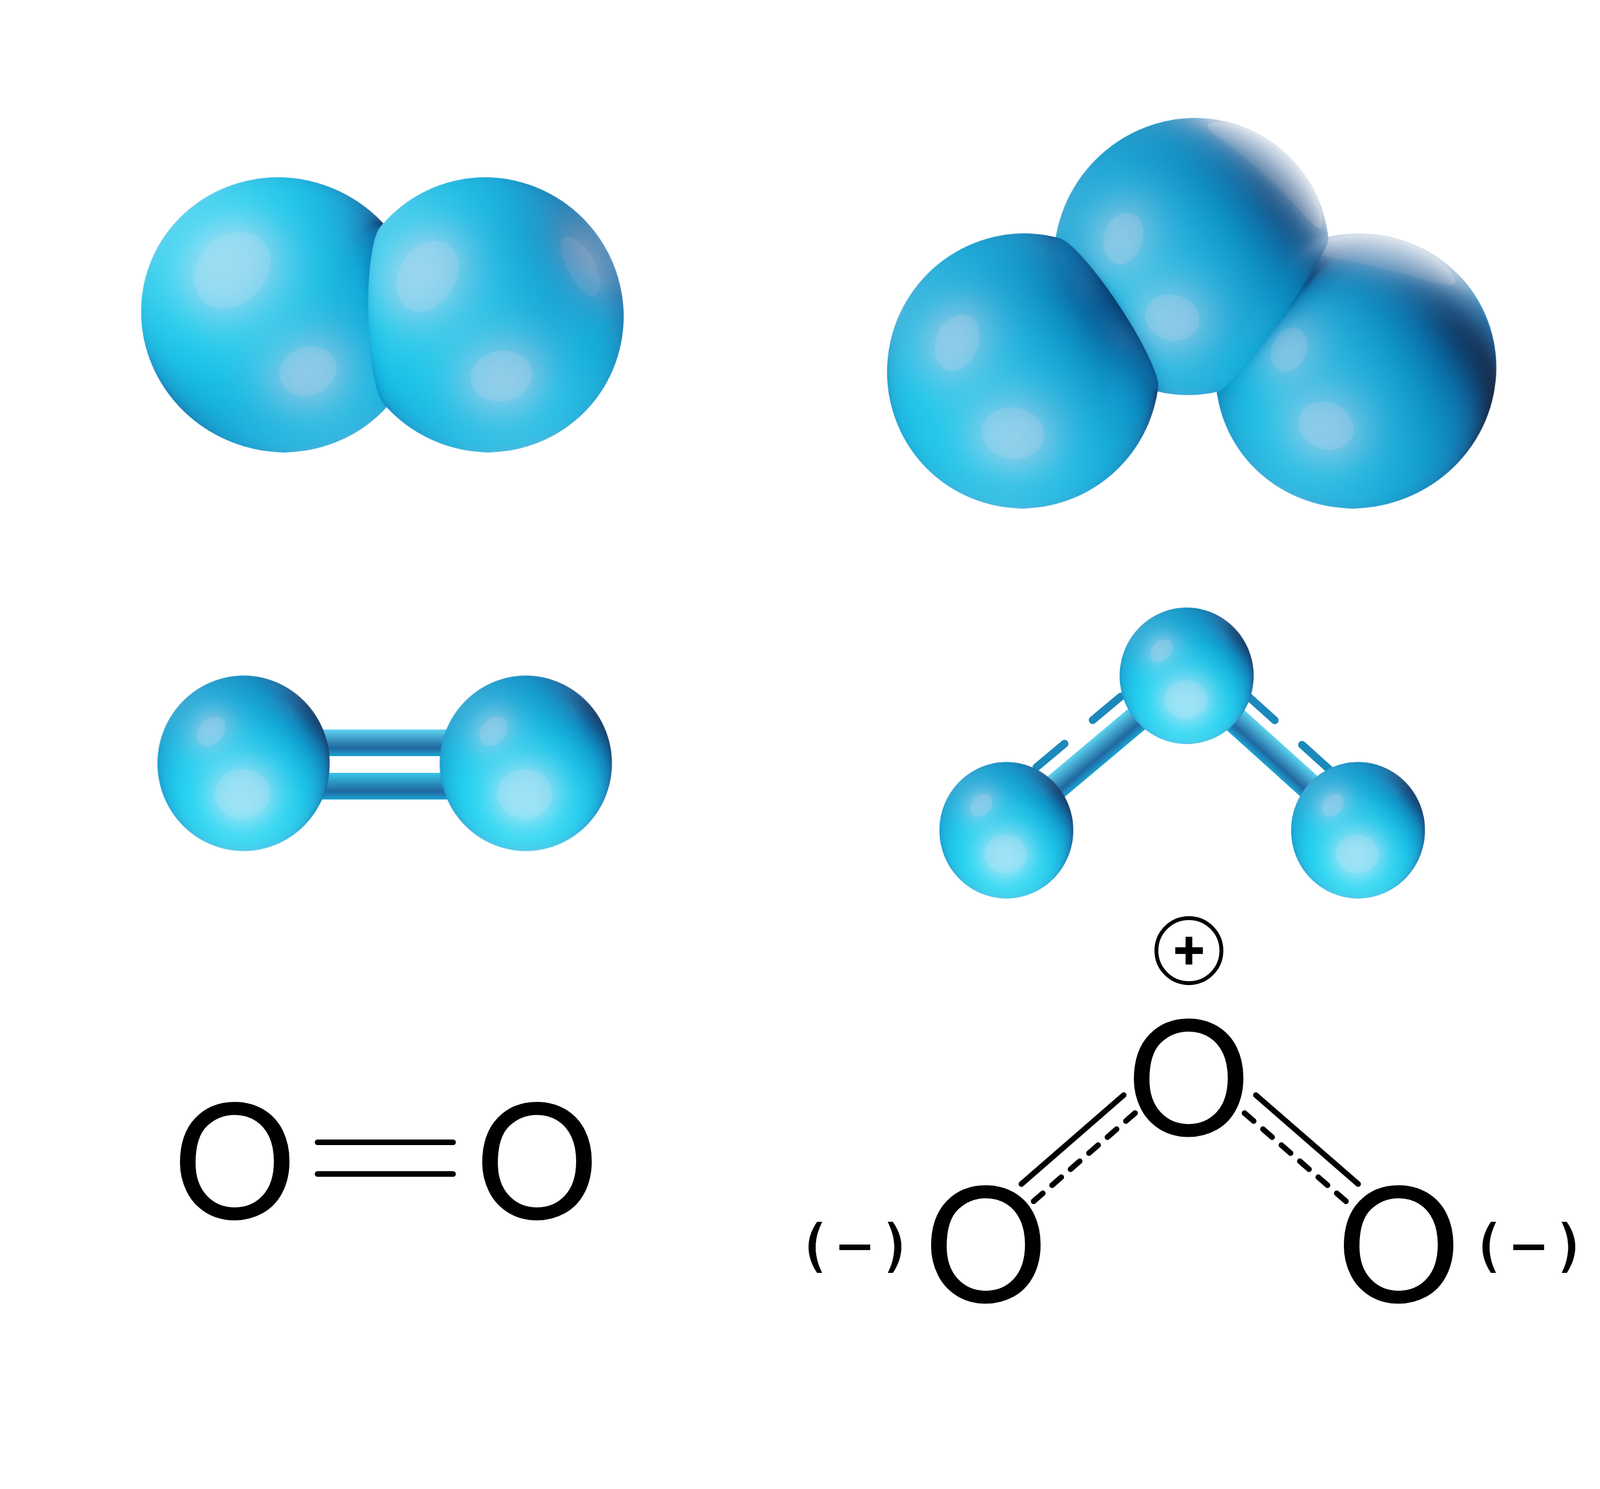 Ilustracja przedstawiająca cząsteczki tlenu oraz ozonu przedstawione w różny sposób. 1. Model kulkowy. Cząsteczkę tlenu stanowią dwie niebieskie stykające się ze sobą kule, to jest dwa atomy tlenu. Cząsteczkę ozonu tworzą trzy niebieskie kule stykające się ze sobą tak, że tworzą kąt rozwarty wynoszący poniżej 120 stopni. 2. Model pręcikowo kulkowy. Cząsteczkę tlenu stanowią dwie niebieskie kulki, to atomy tlenu, połączone ze sobą za pomocą wiązania podwójnego, które symbolizują dwa pręciki łączące kulki.  Cząsteczkę ozonu tworzą trzy kulki połączone pierwsza z drugą za pomocą jednego pręcika oraz pręcika przerywanego, druga z trzecią również za pomocą jednego pełnego pręcika i jednego przerywanego pręcika. Atomy tworzą kąt wynoszący 116,8 stopnia. 3. Zapis strukturalny. Cząsteczka tlenu zbudowana z dwóch atomów tlenu O połączonych za pomocą wiązania podwójnego, dwie poziome kreski łączące atomy tlenu. Cząsteczka ozonu trzy połączone ze sobą za pomocą wiązań pojedynczych i przerywanych linii stanowiących o niepełnym wiązaniu oraz występowaniu rezonansu, gdzie atom środkowy obdarzony jest cząstkowym ładunkiem dodatnim, zaś dwa skrajne atomy tlenu posiadają cząstkowe ładunki ujemne.